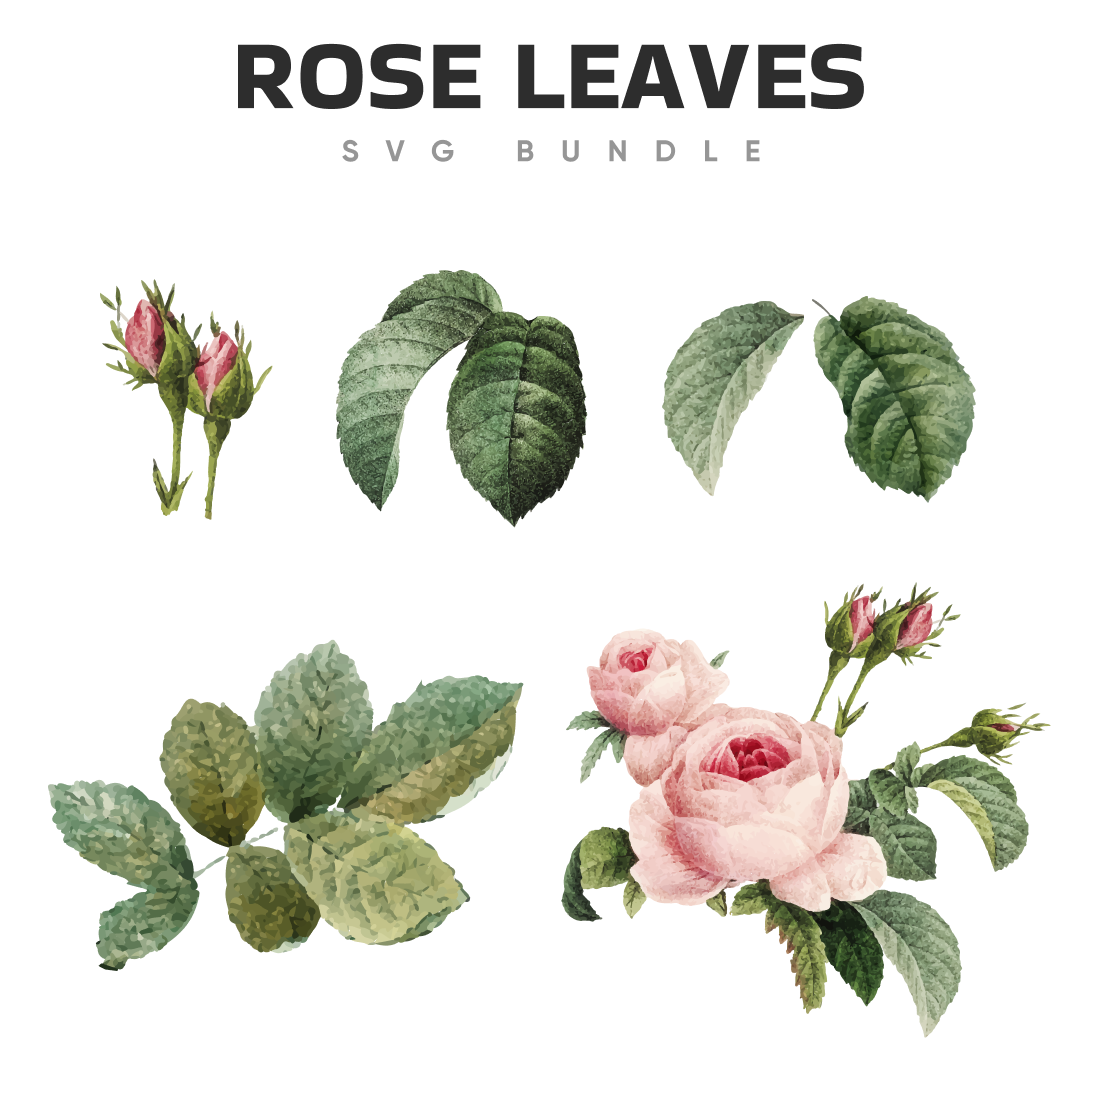 Images of rose leaves svg.